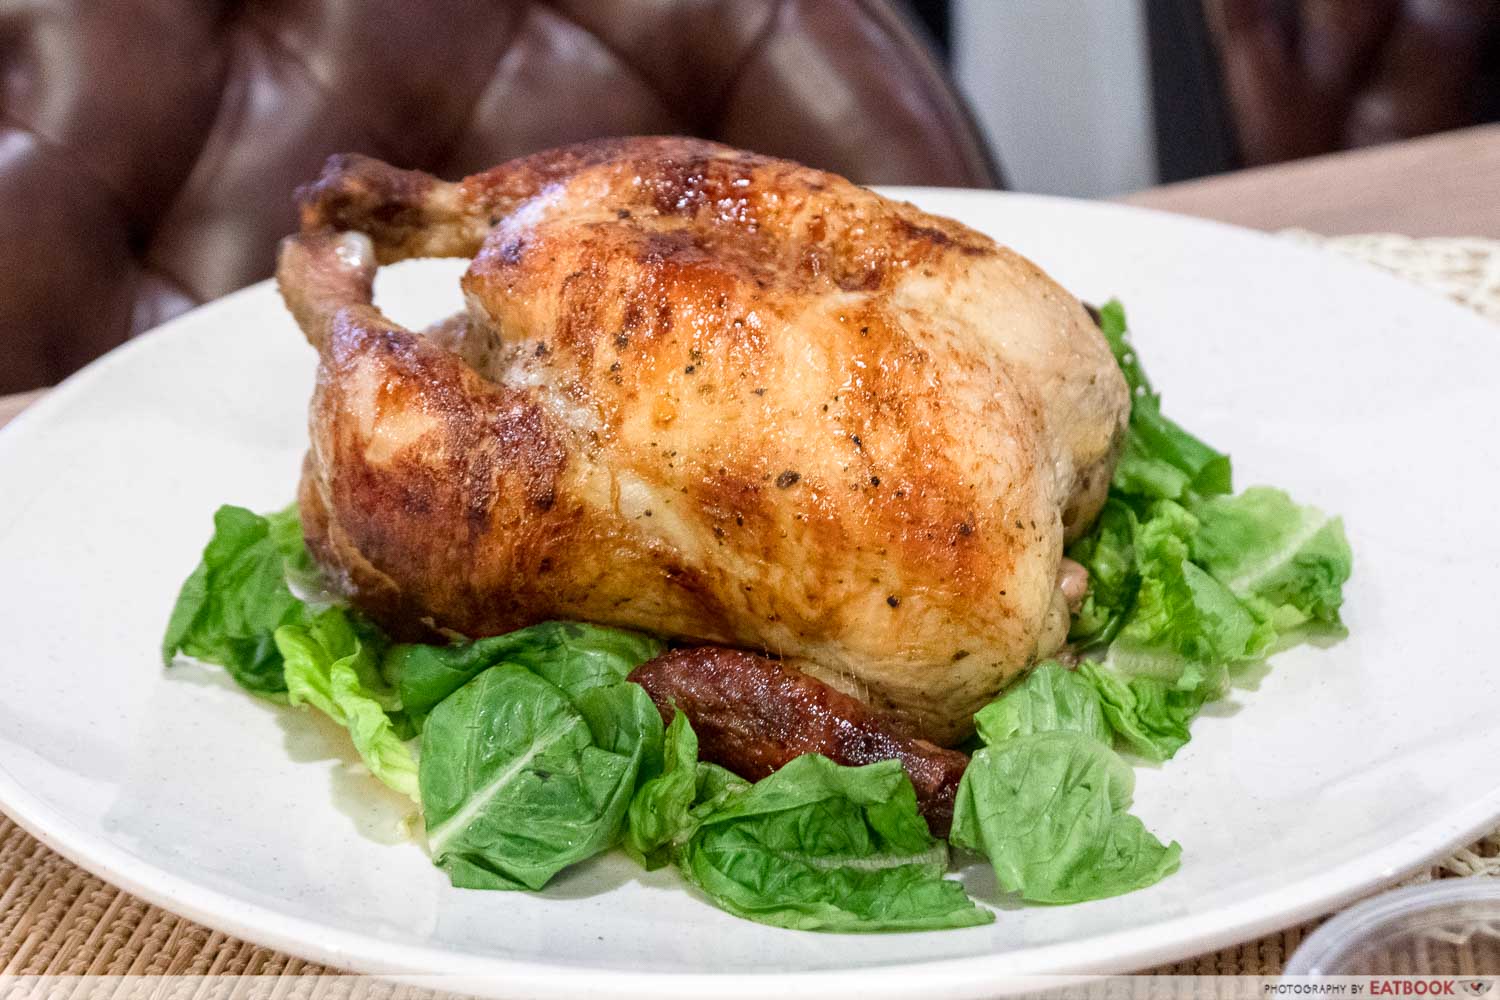 800° Woodfired kitchen - rotisserie chicken